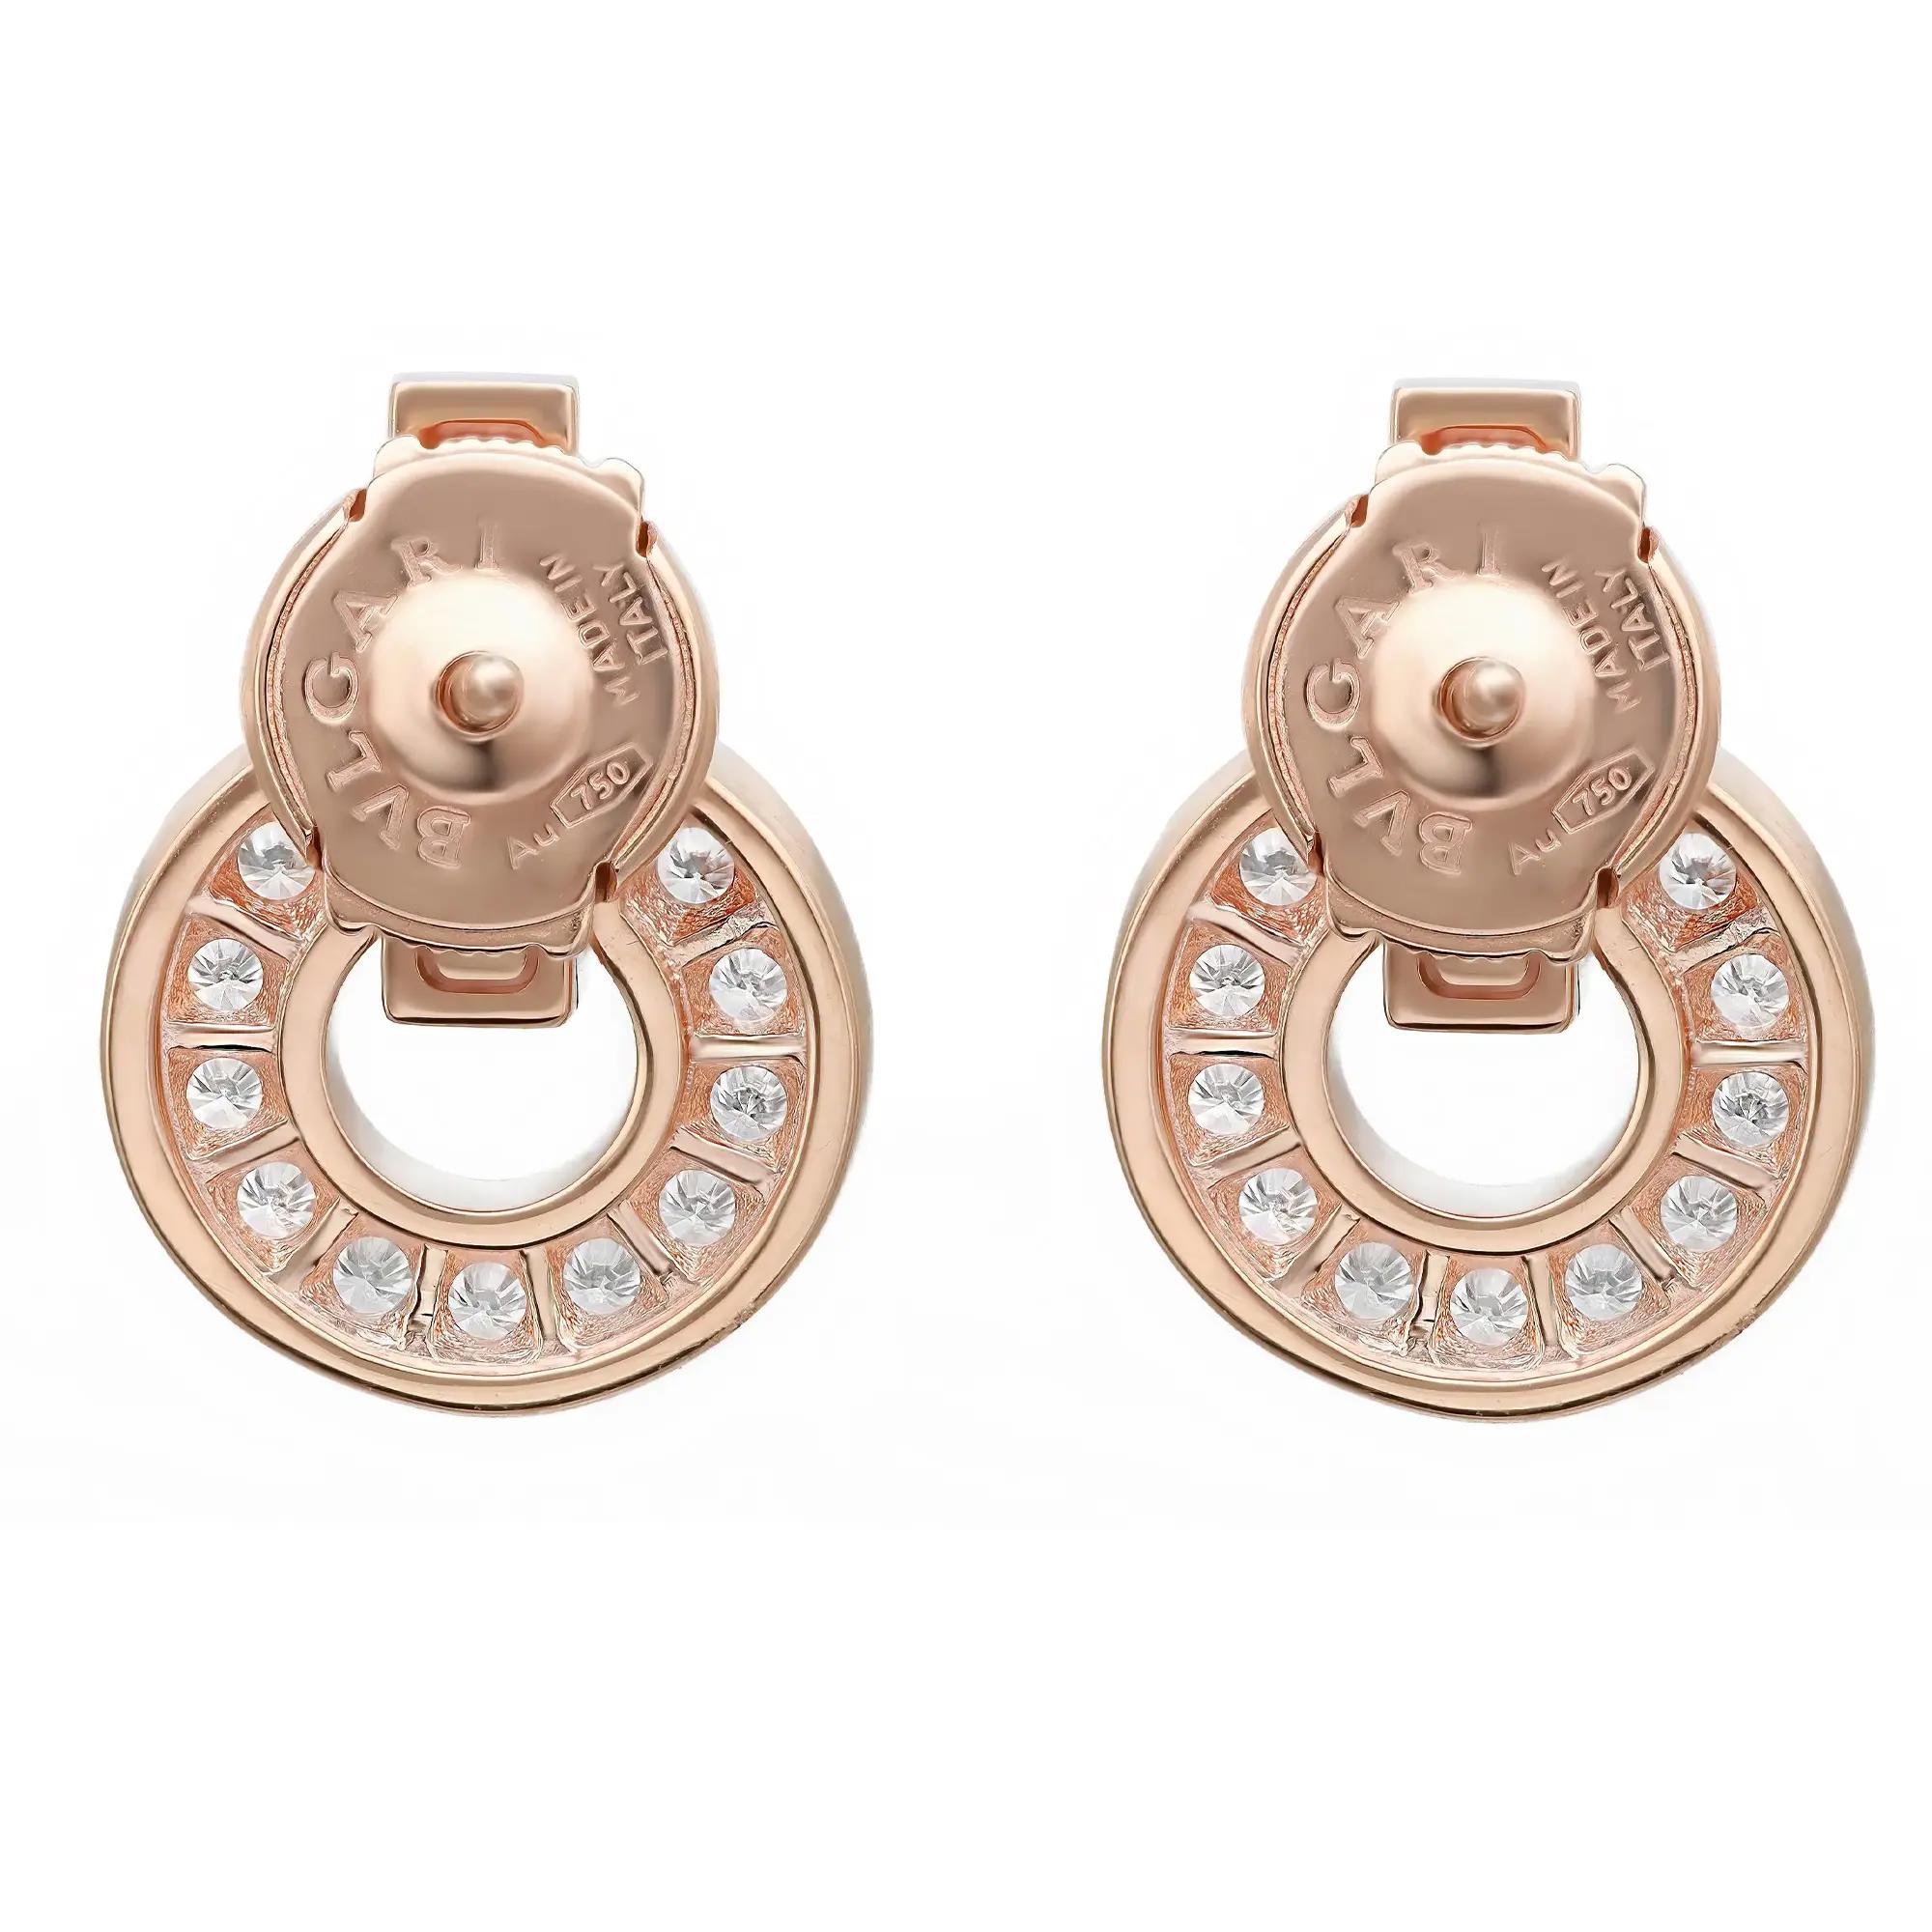 Diese schönen und modernen Diamantohrringe von Bvlgari sind aus glänzendem 18-karätigem Roségold gefertigt und stehen für Raffinesse. Der Ohrring ist mit einem eingravierten Bvlgari-Logo versehen, das an einem ikonischen kreisförmigen Motiv mit